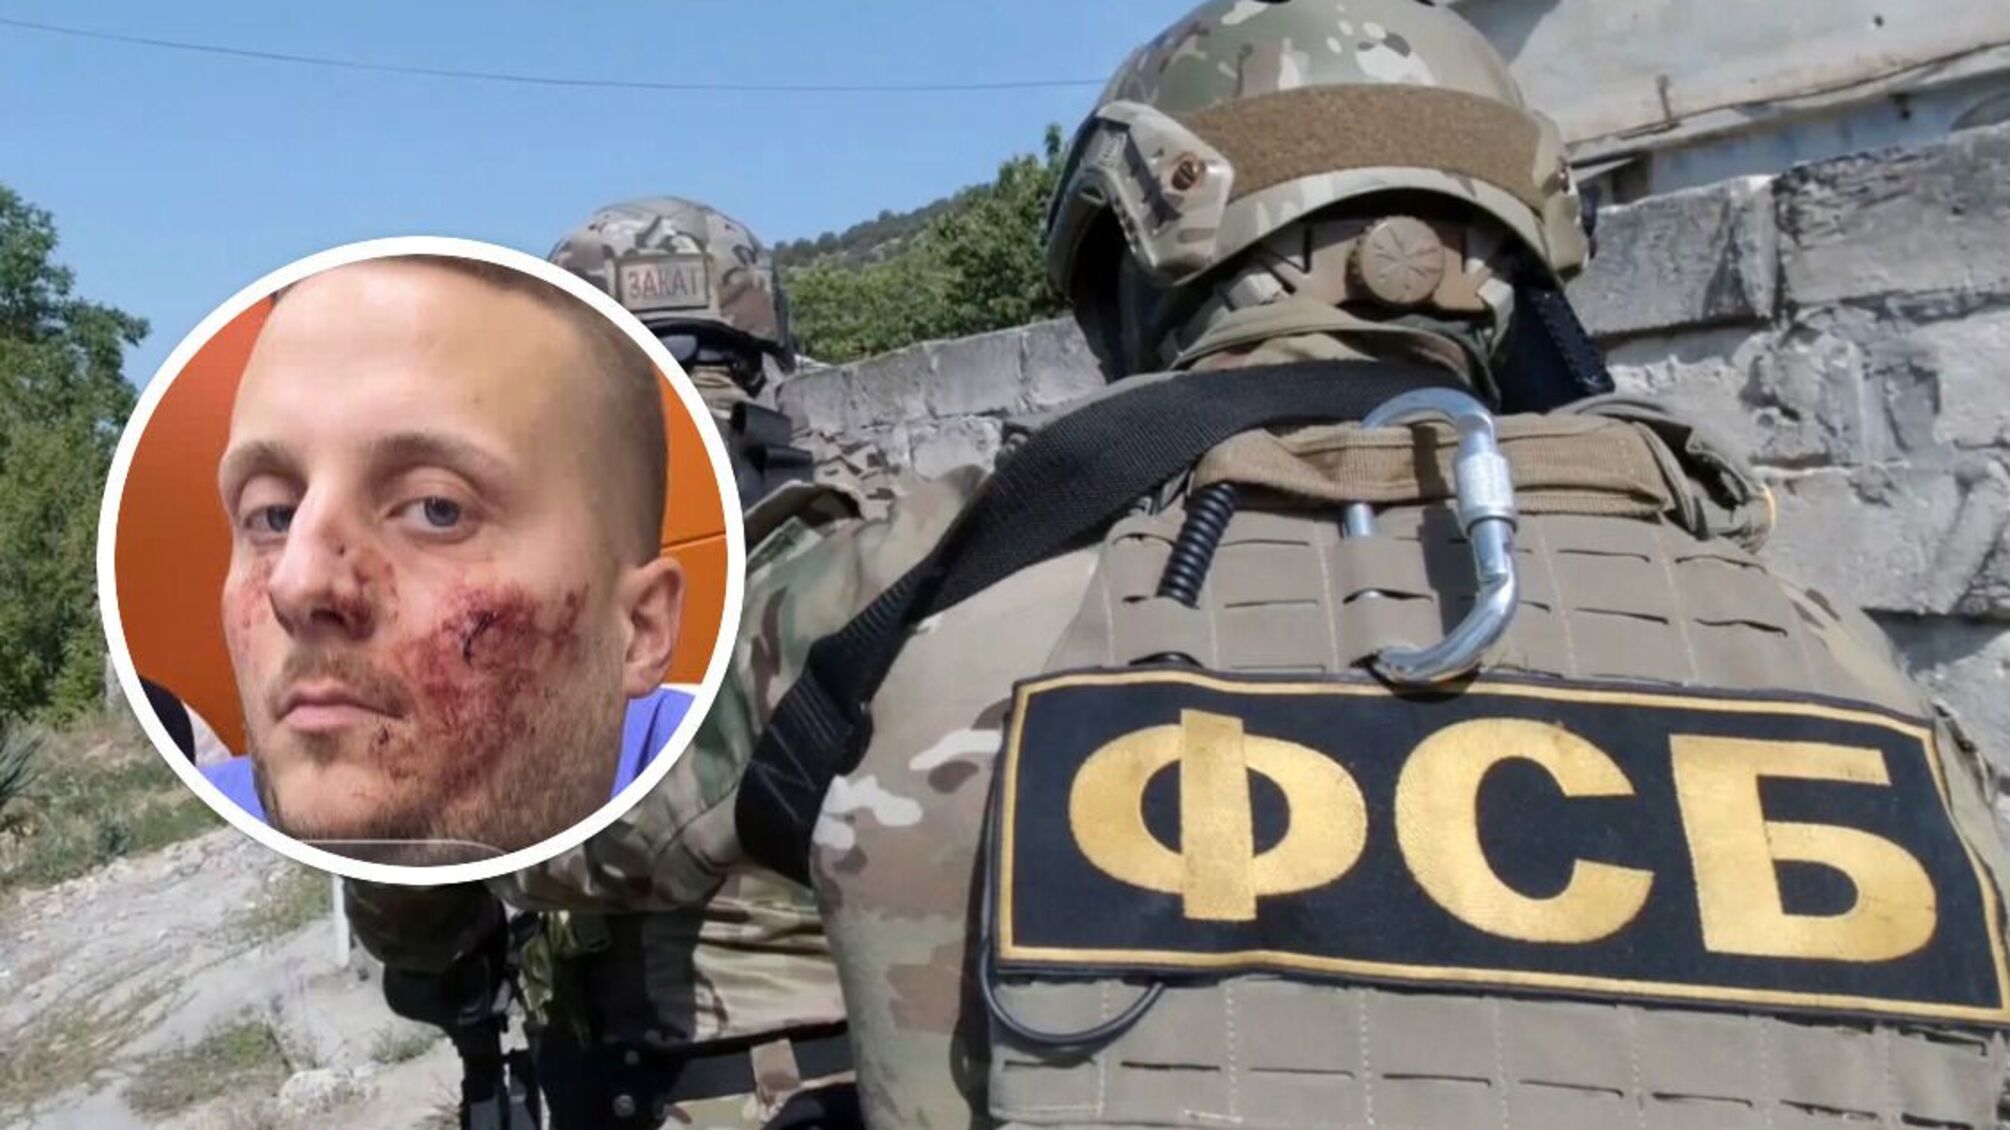 У Туреччині стався напад на спецагента рф Боке: говорив, що Буча - постановка, і брехав про Донбас